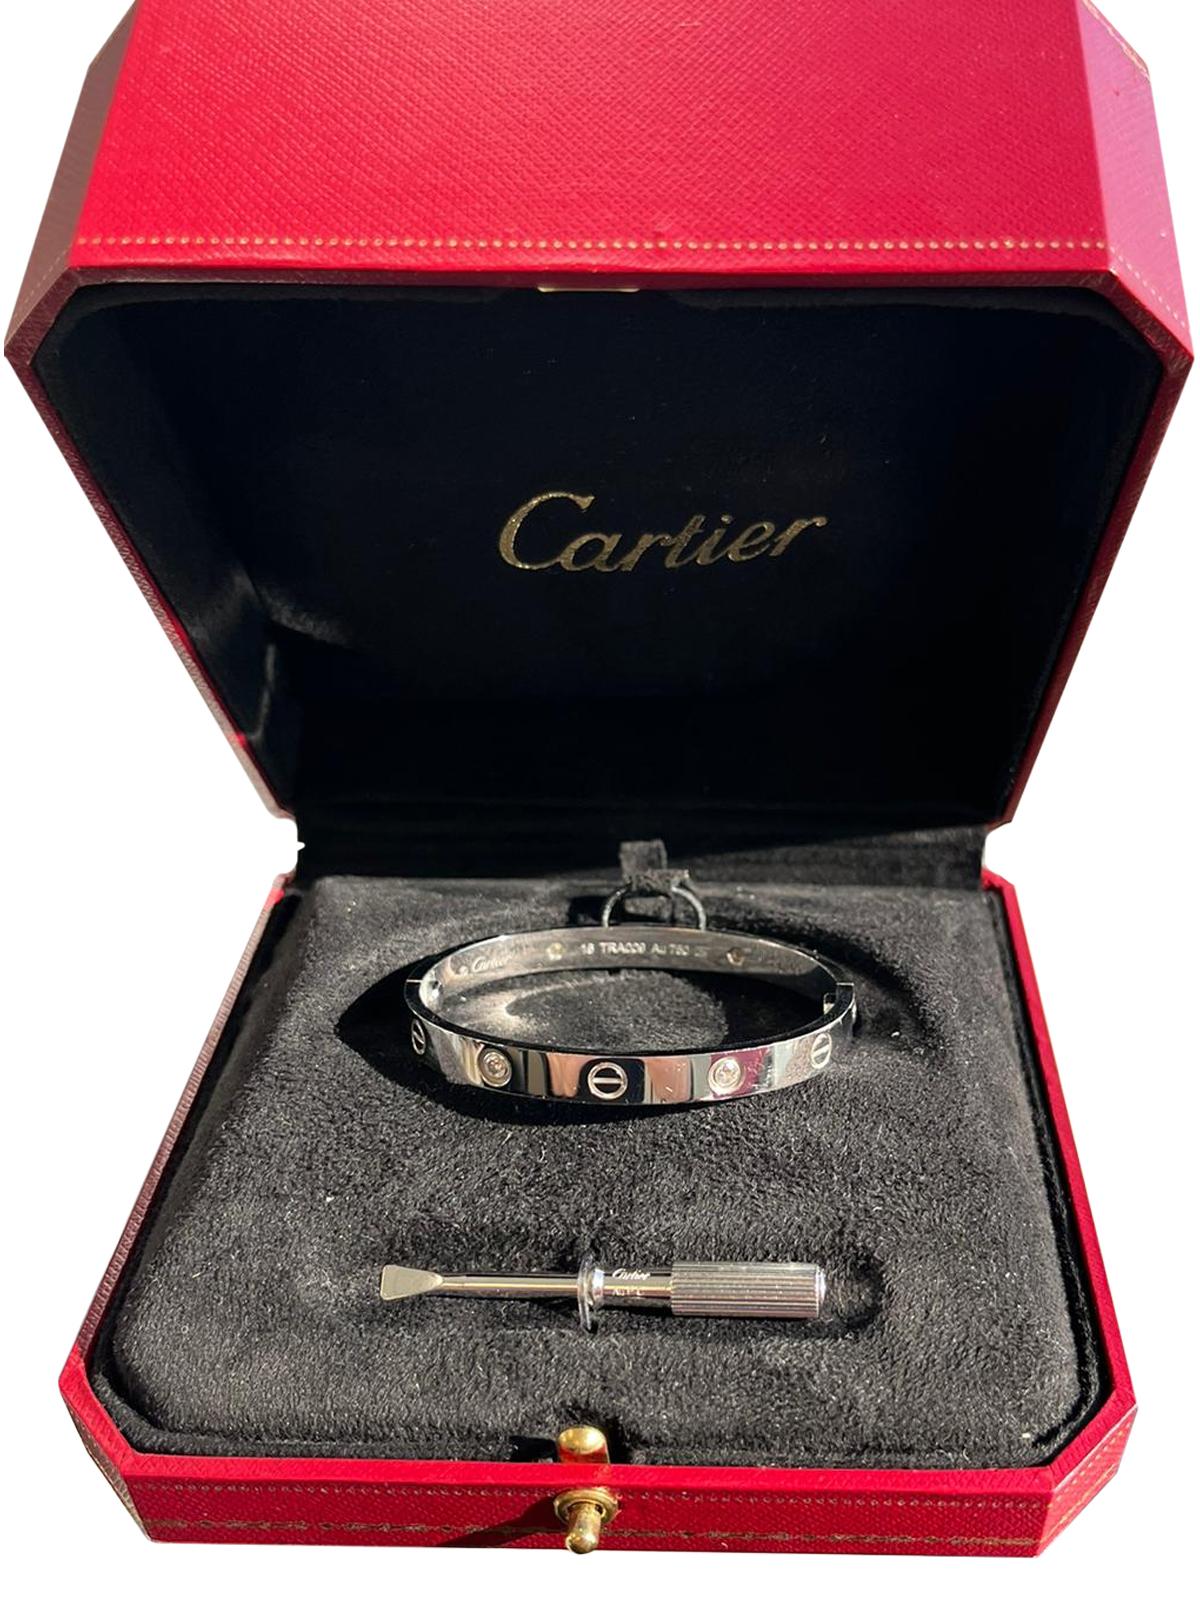 Cartier Love Bracelet 0.42 Carats 18K White Gold 4 Brilliant Cut Diamonds Bangle For Sale 1